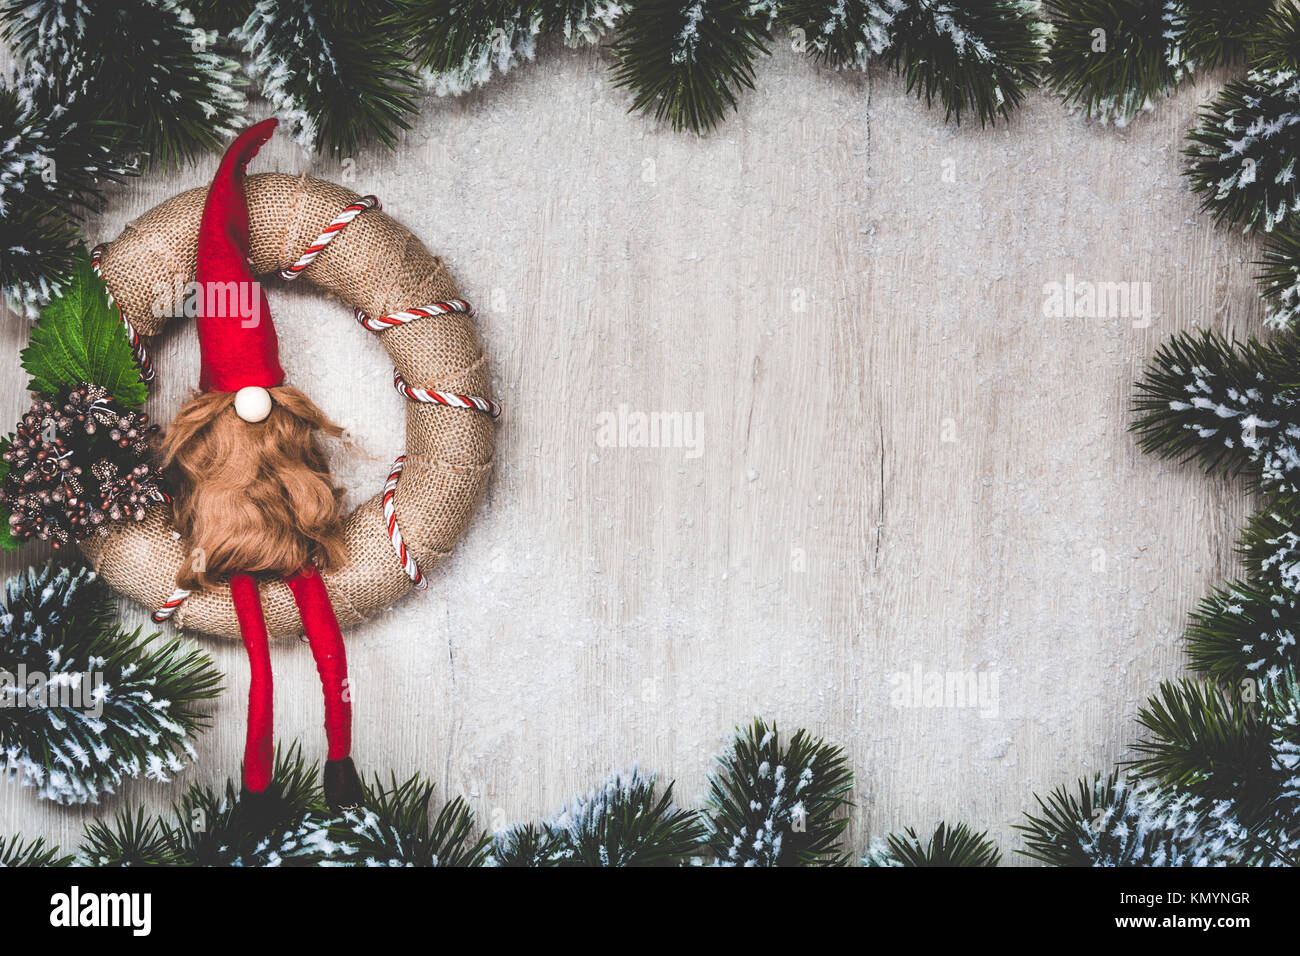 Weihnachten Grußkarte. Weihnachten Hintergrund mit Schnee Tannenbaum und Nordic Weihnachten Kranz handgefertigt. Sicht von oben mit Platz für ihre Grüße. Stockfoto